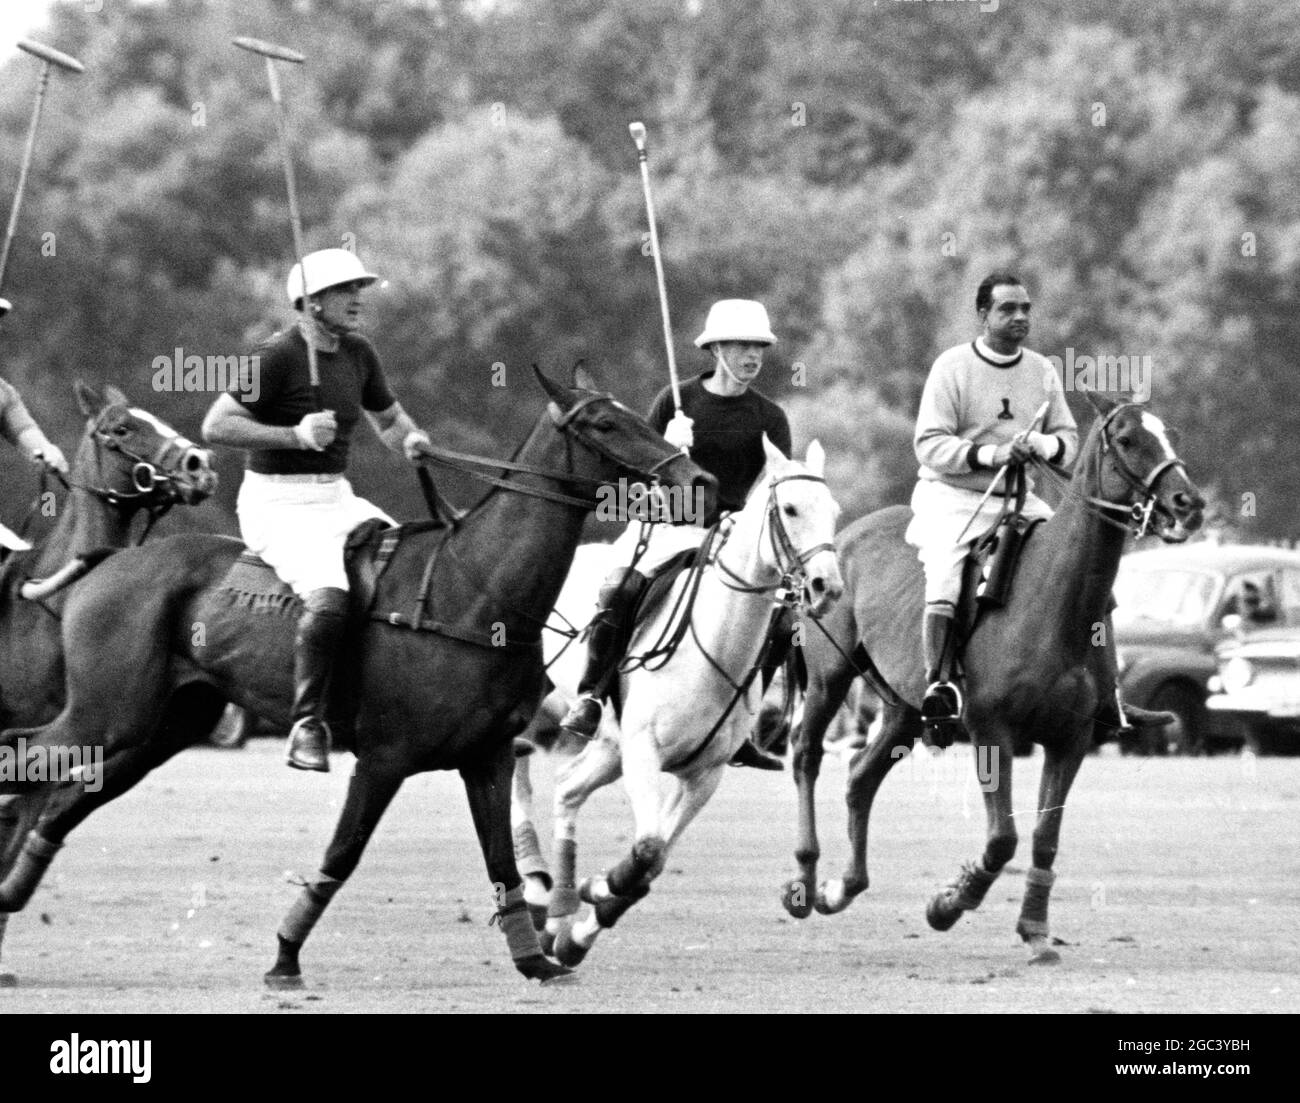 Prinz Charles (Mitte) hält mit dem Spiel in Windsor Schritt, als er für die Rangers gegen Chiesmans im Chairman's Cup auftrat. Sein Vater, der ihn heute Nachmittag beobachtete, konnte wegen eines angespannten Muskels in seinem Oberschenkel nicht an dem dreitägigen Turnier teilnehmen. Auf seiner linken Seite ist J Cavanagh und auf seiner rechten Seite der Maharaja von Jaipur als Schiedsrichter. 7. August 1965 Stockfoto